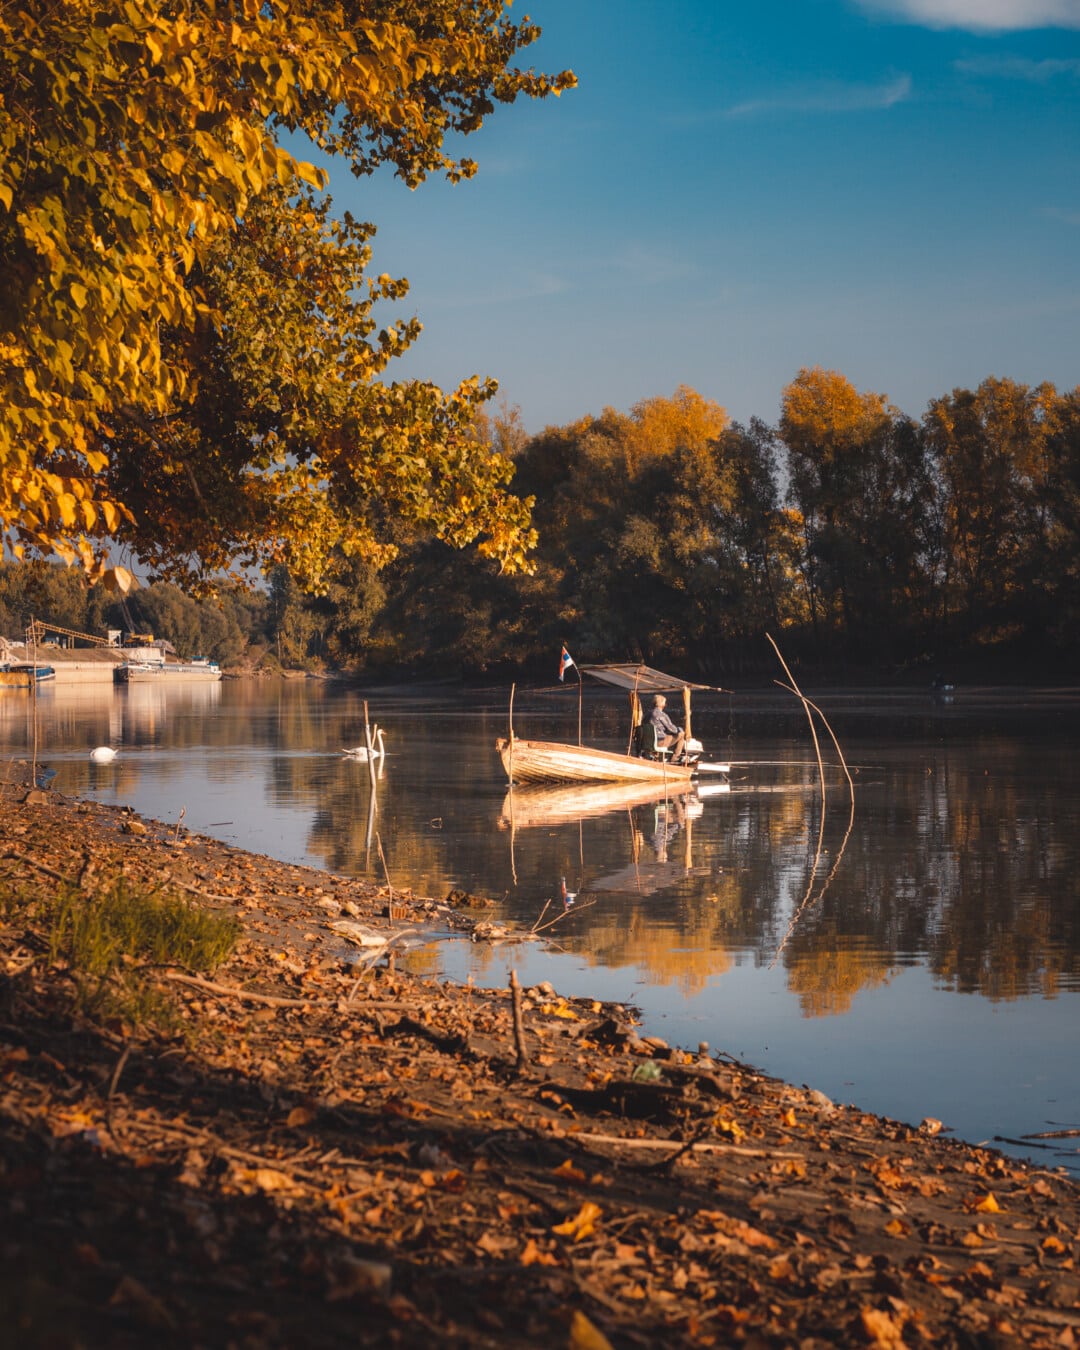 Herbstsaison, Oktober, Angelboot/Fischerboot, Angeln, Erholung, idyllisch, Fluss, See, Reflexion, Wasser